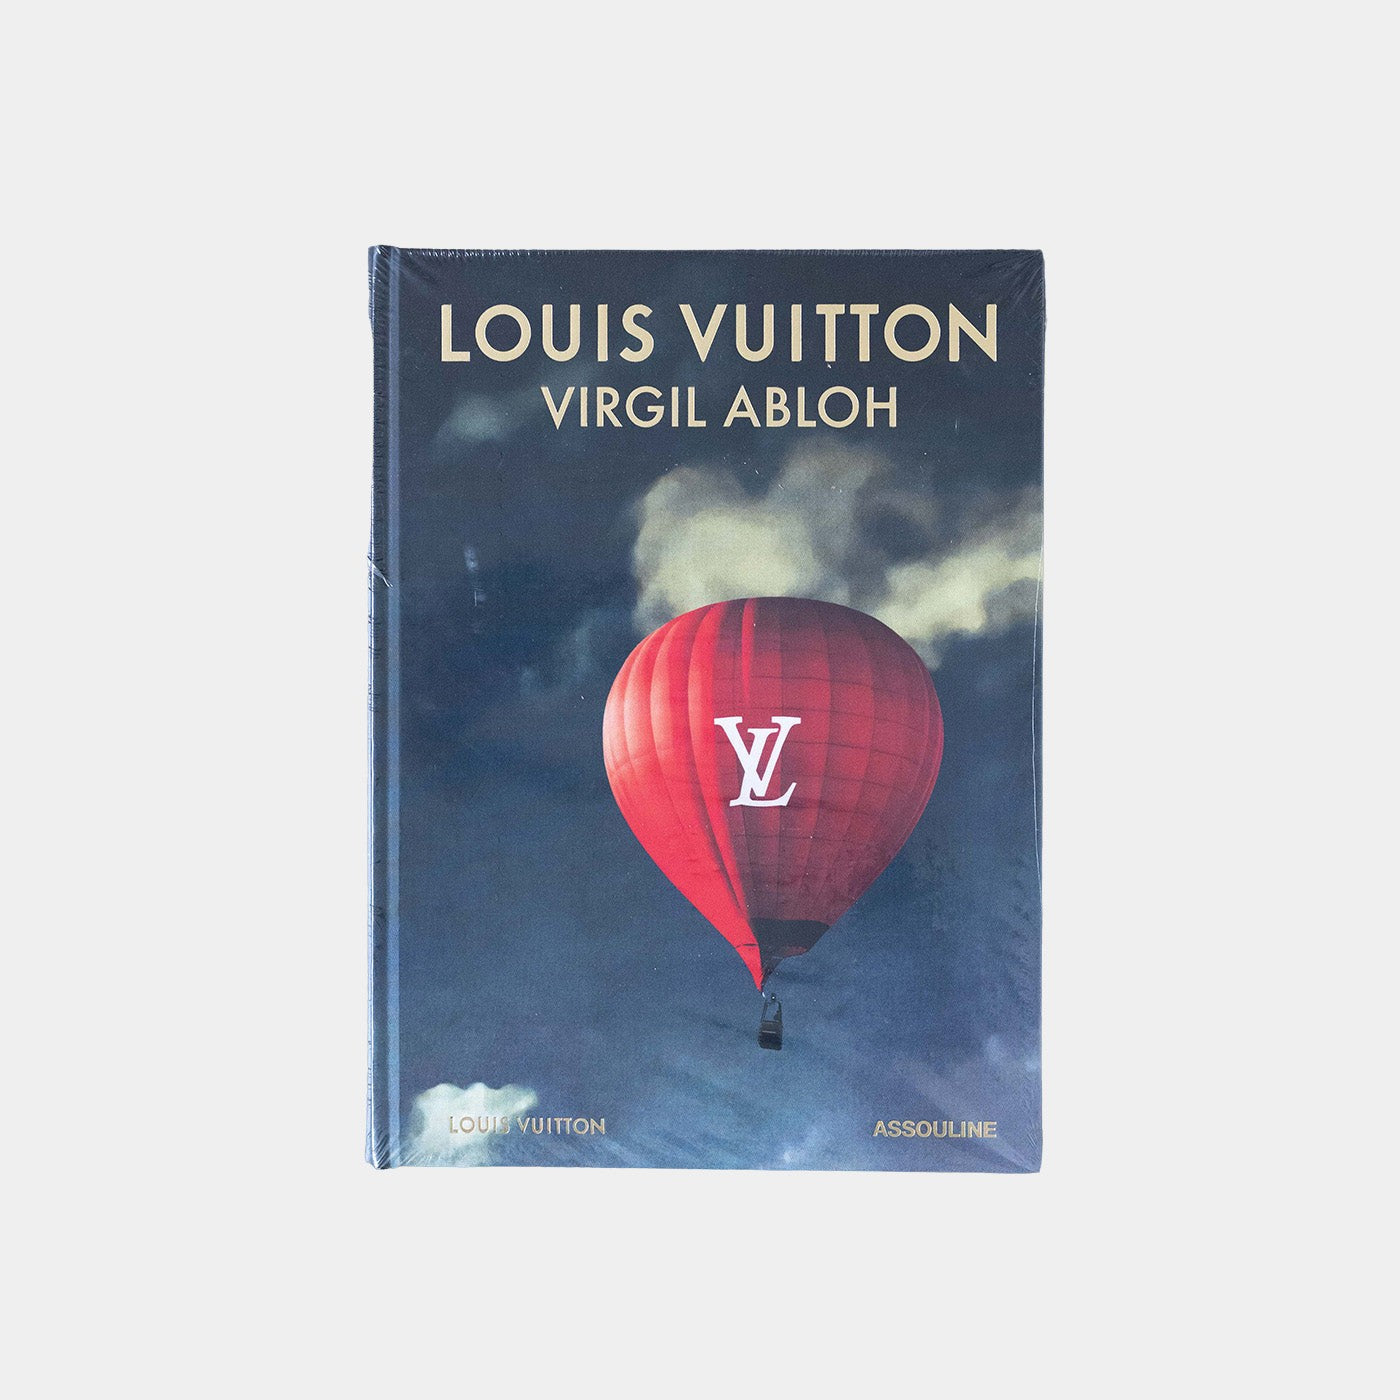 Louis Vuitton: Virgil Abloh (klasyczna okładka na balon)